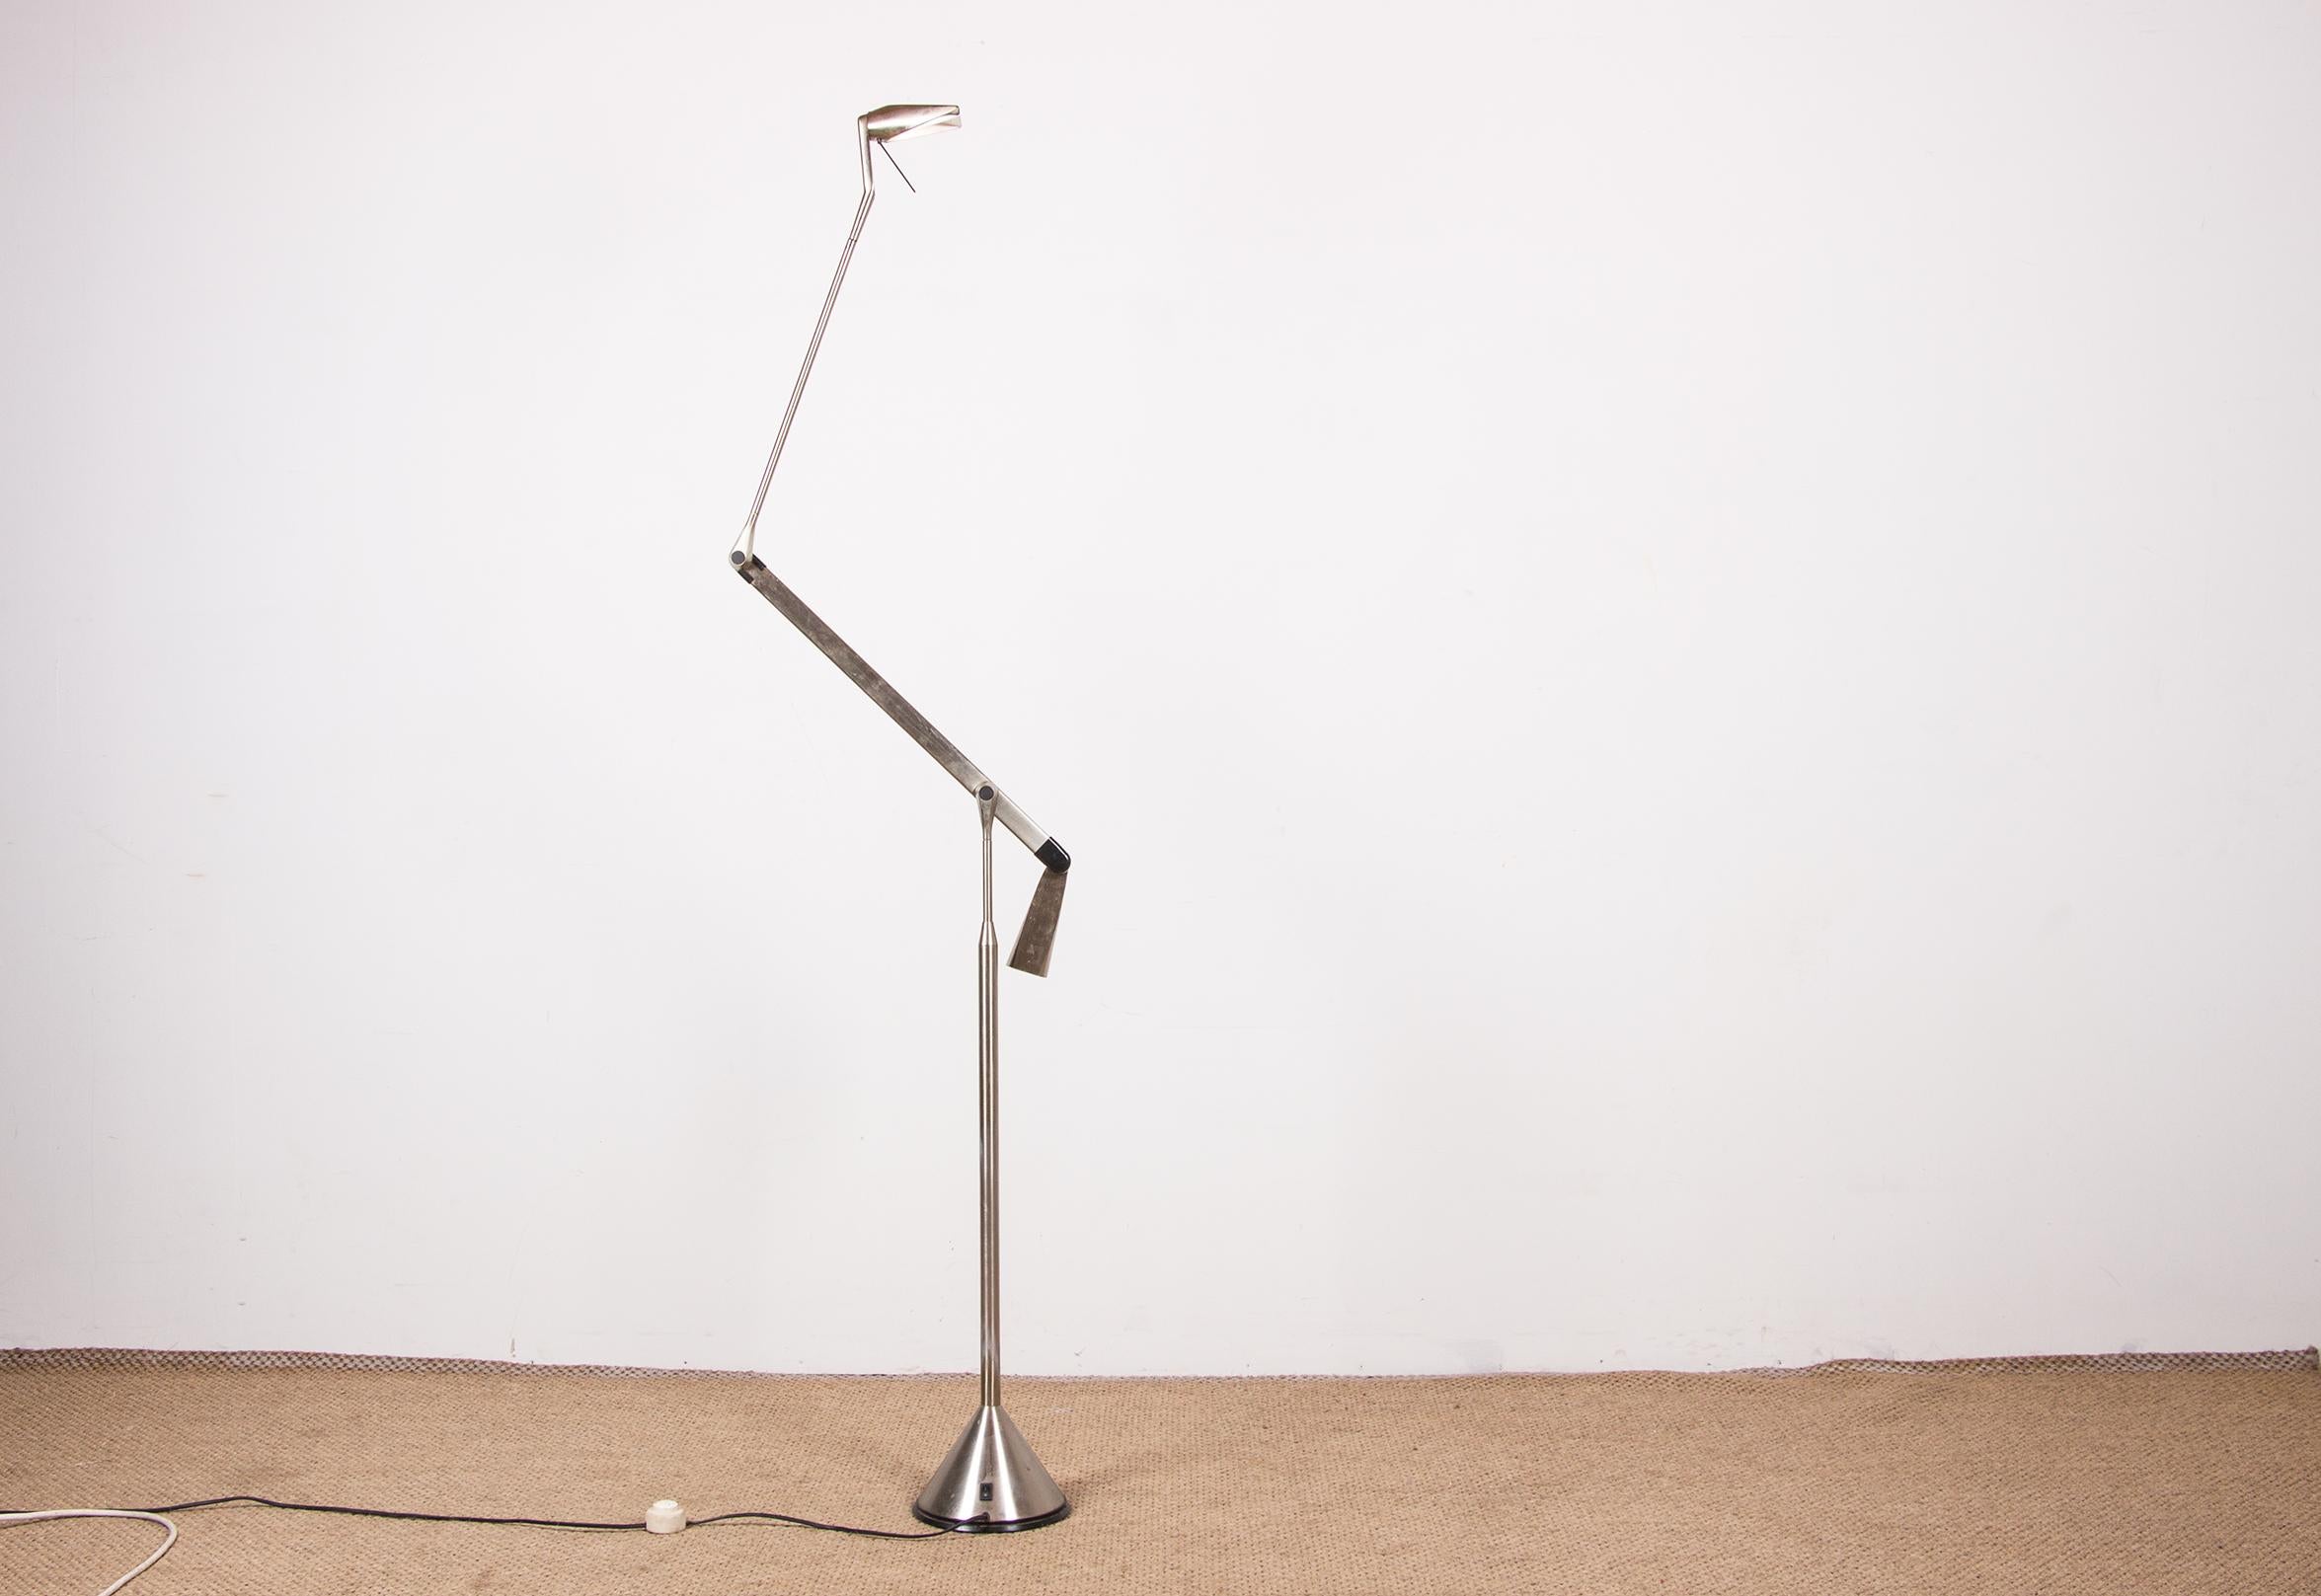 Superbe grand lampadaire moderniste italien. 
Elle est dotée d'un système d'équilibrage unique avec un contrepoids qui permet à la lampe d'être toujours placée dans la position souhaitée et d'être utilisée de manière multifonctionnelle.